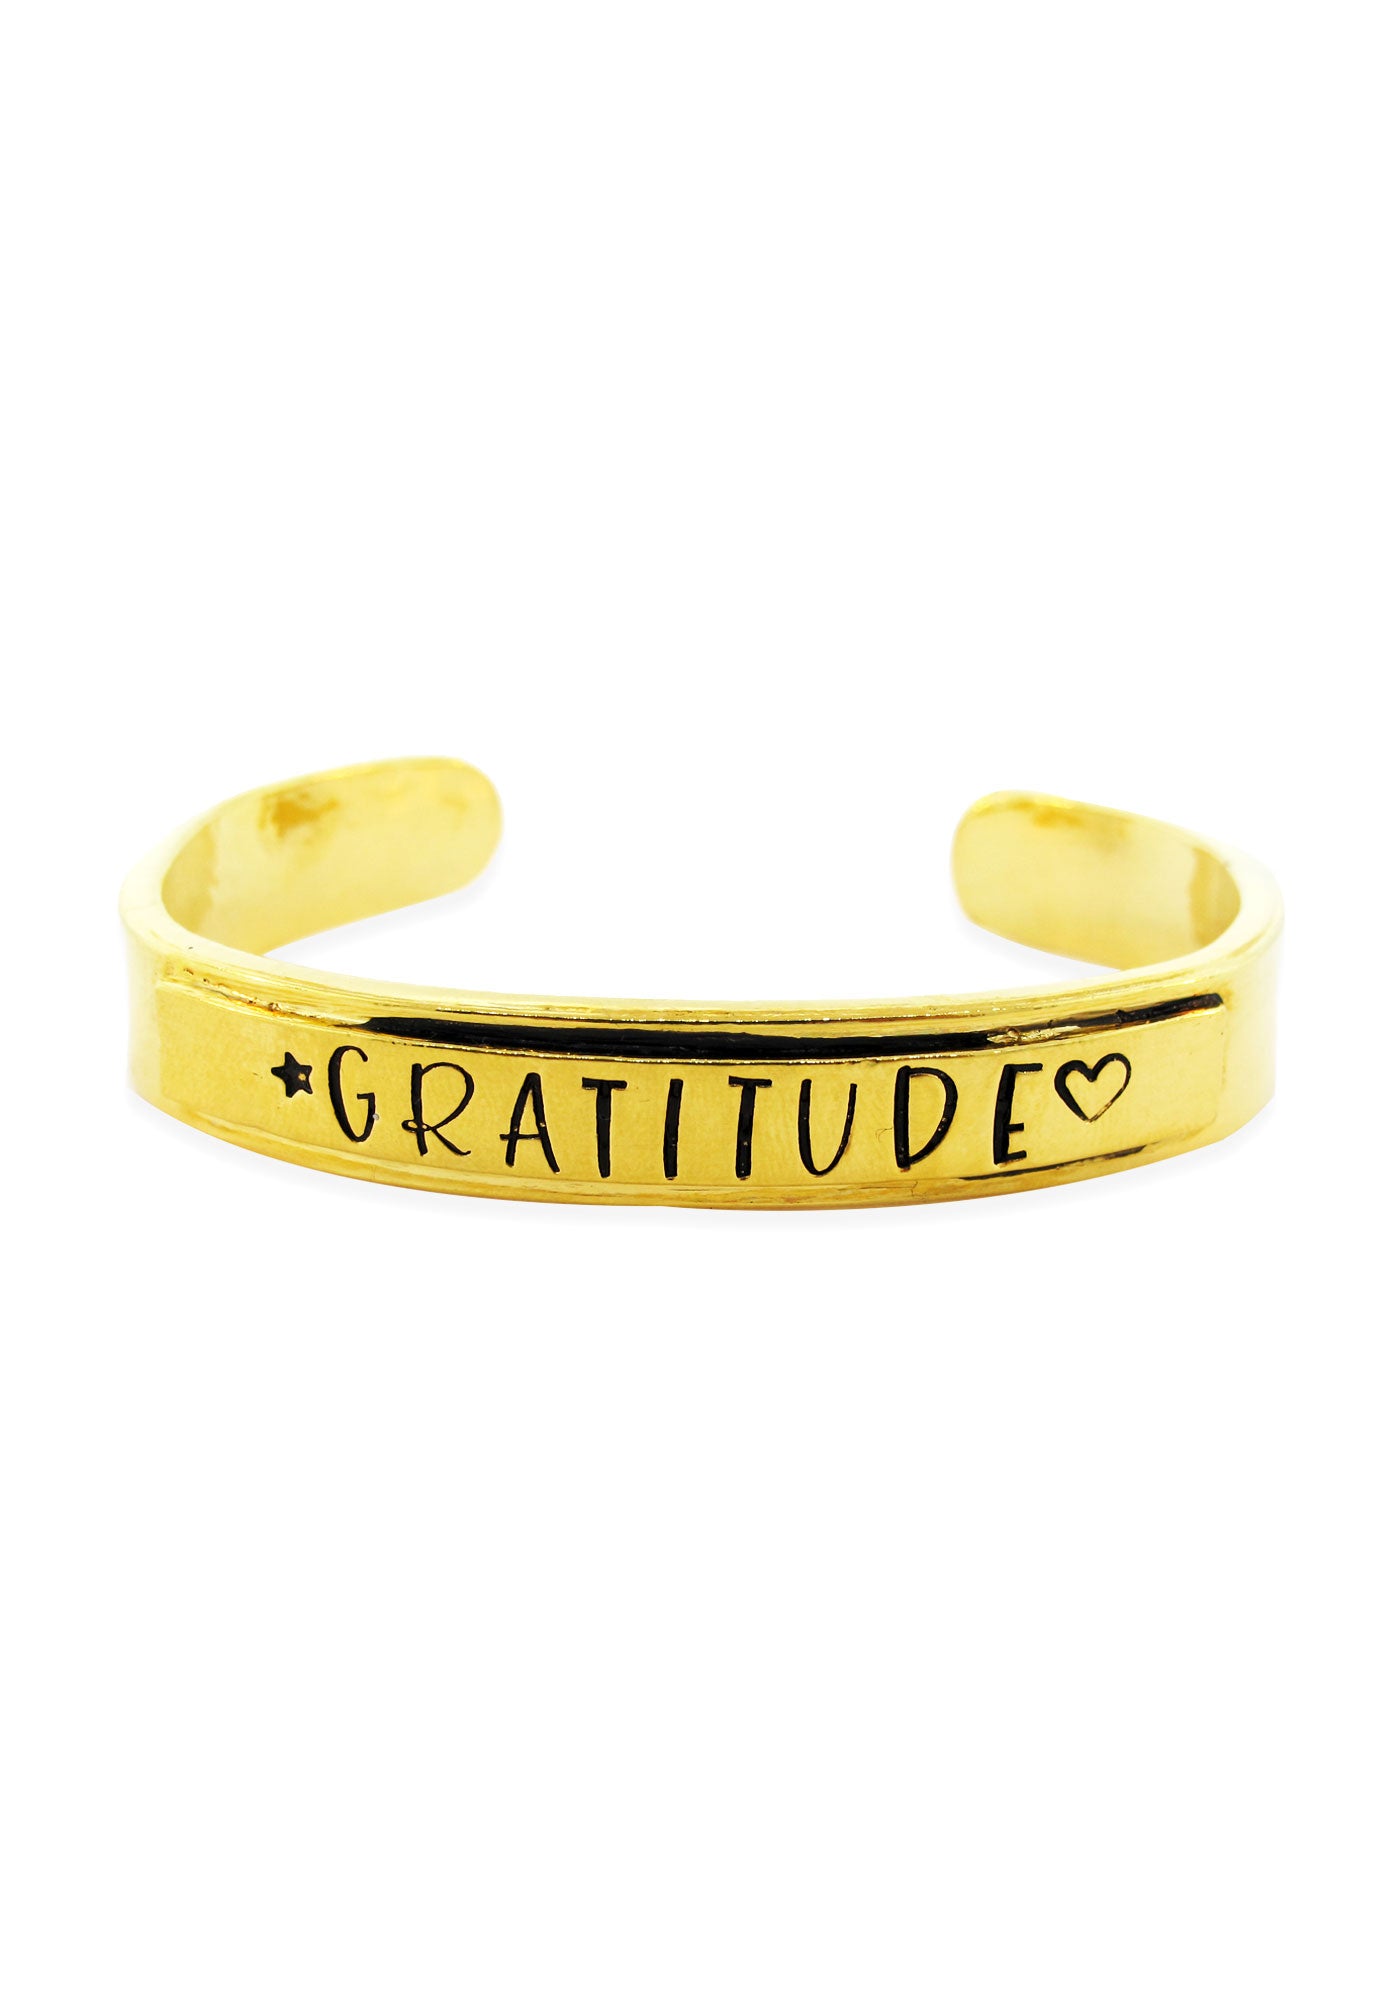 Gratitude Hand Stamped Cuff Bracelet